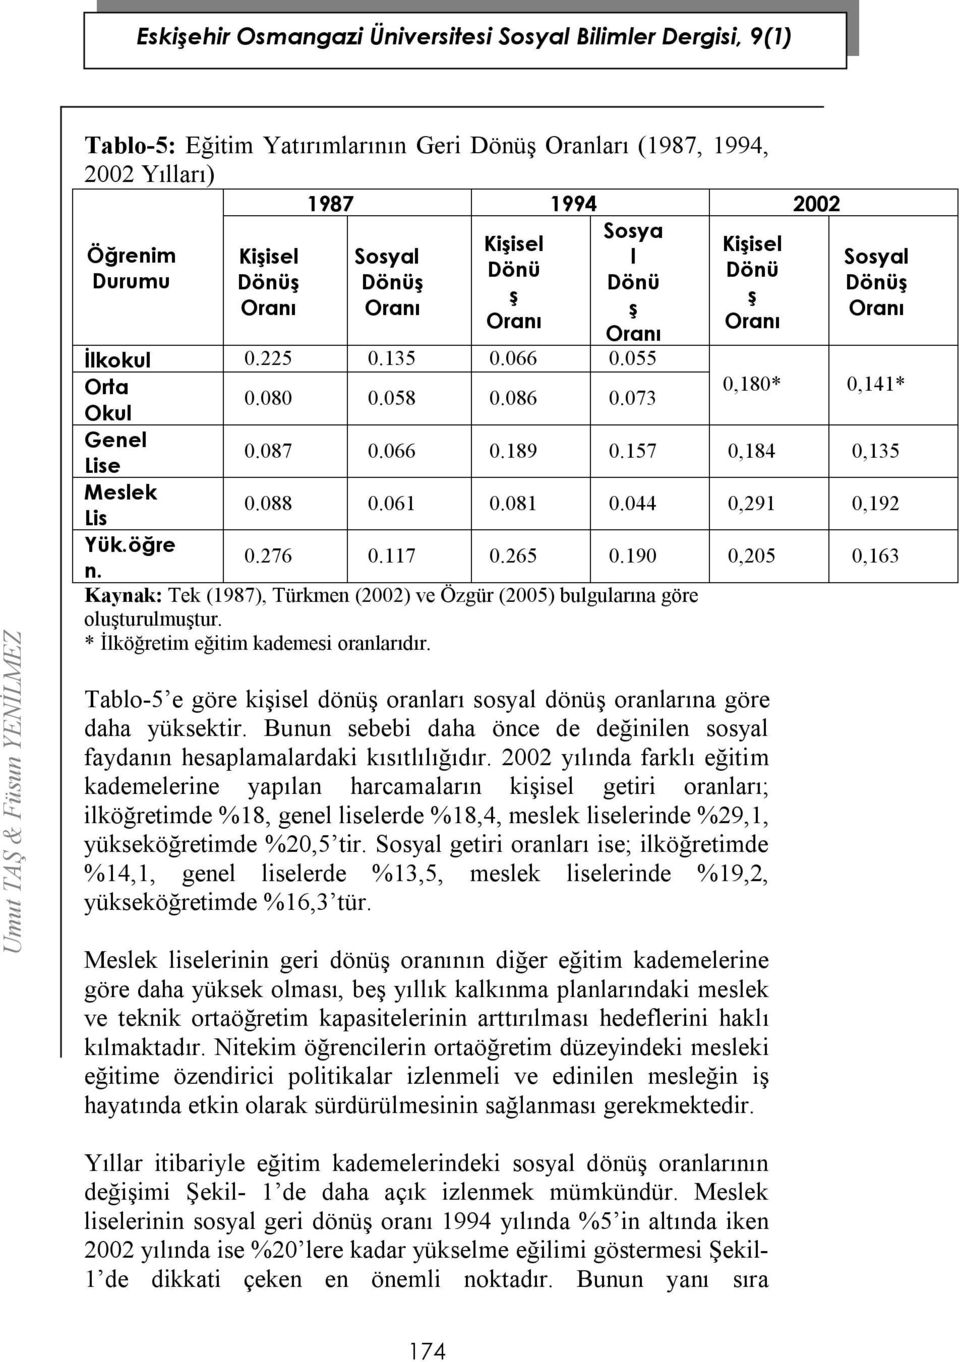 044 0,291 0,192 Yük.öğre n. 0.276 0.117 0.265 0.190 0,205 0,163 Kaynak: Tek (1987), Türkmen (2002) ve Özgür (2005) bulgularına göre oluşturulmuştur. * İlköğretim eğitim kademesi oranlarıdır.